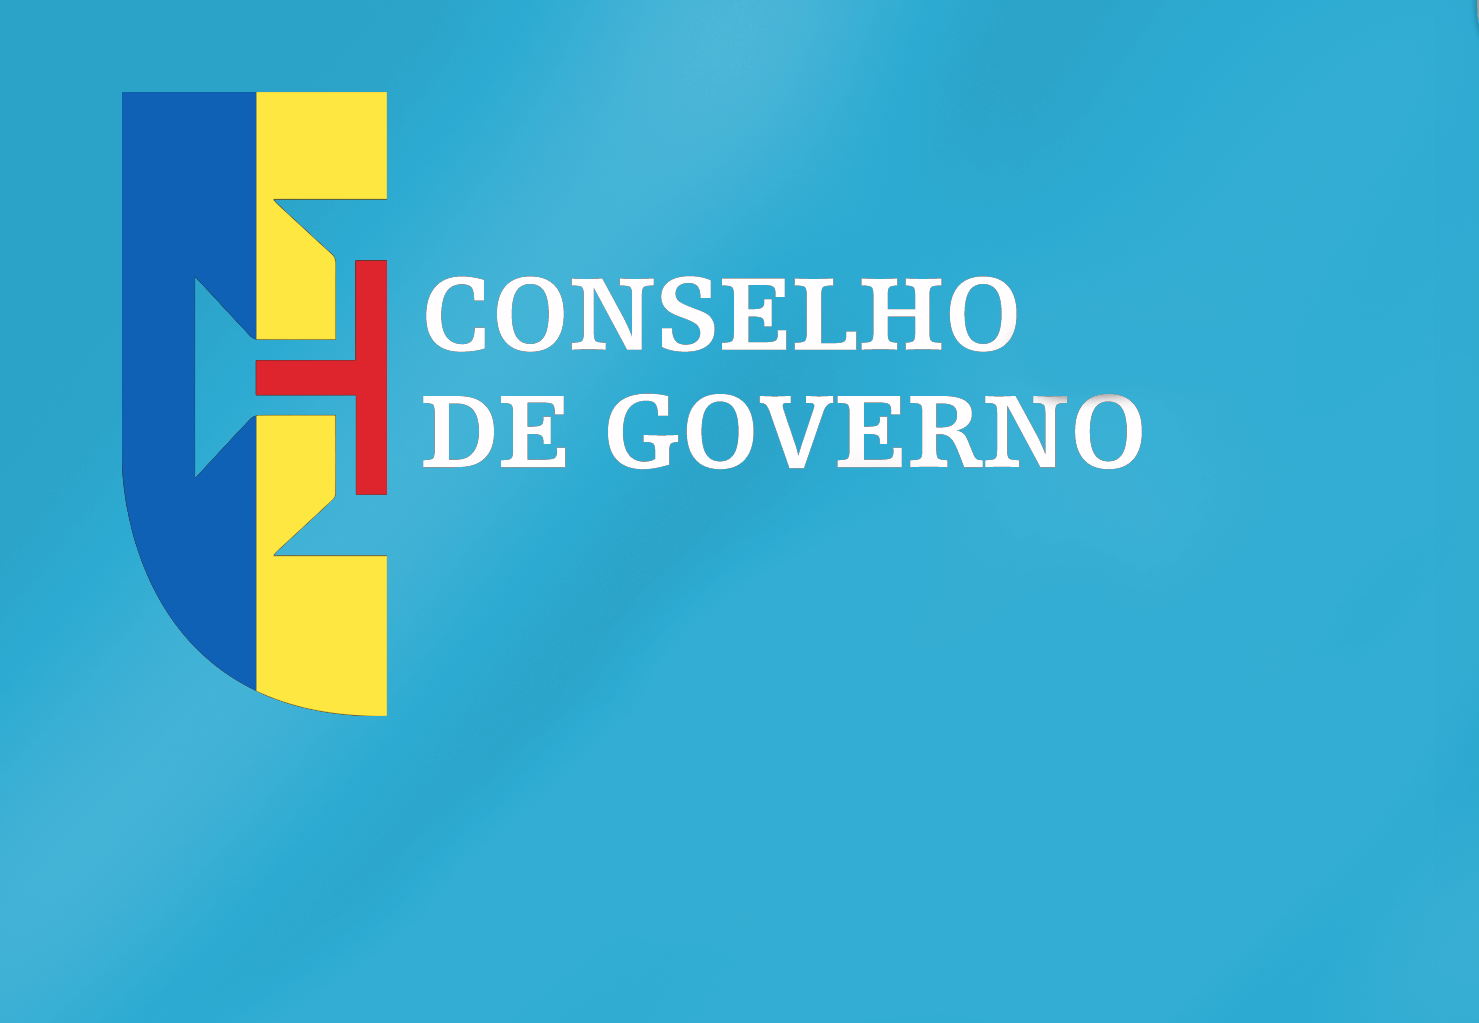 Conclusões Conselho de Governo - 01 de setembro de 2022